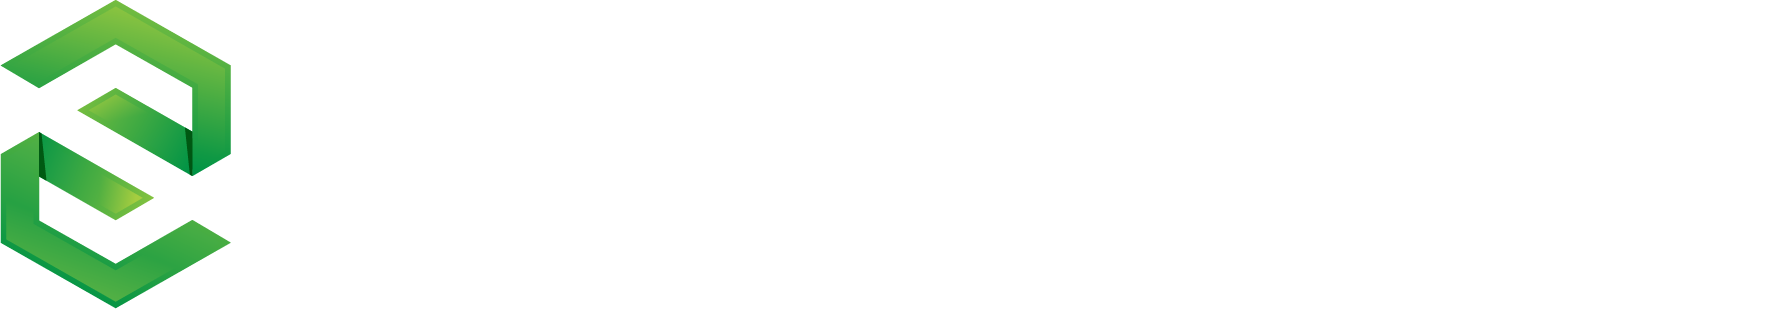 swiftwidget_logo